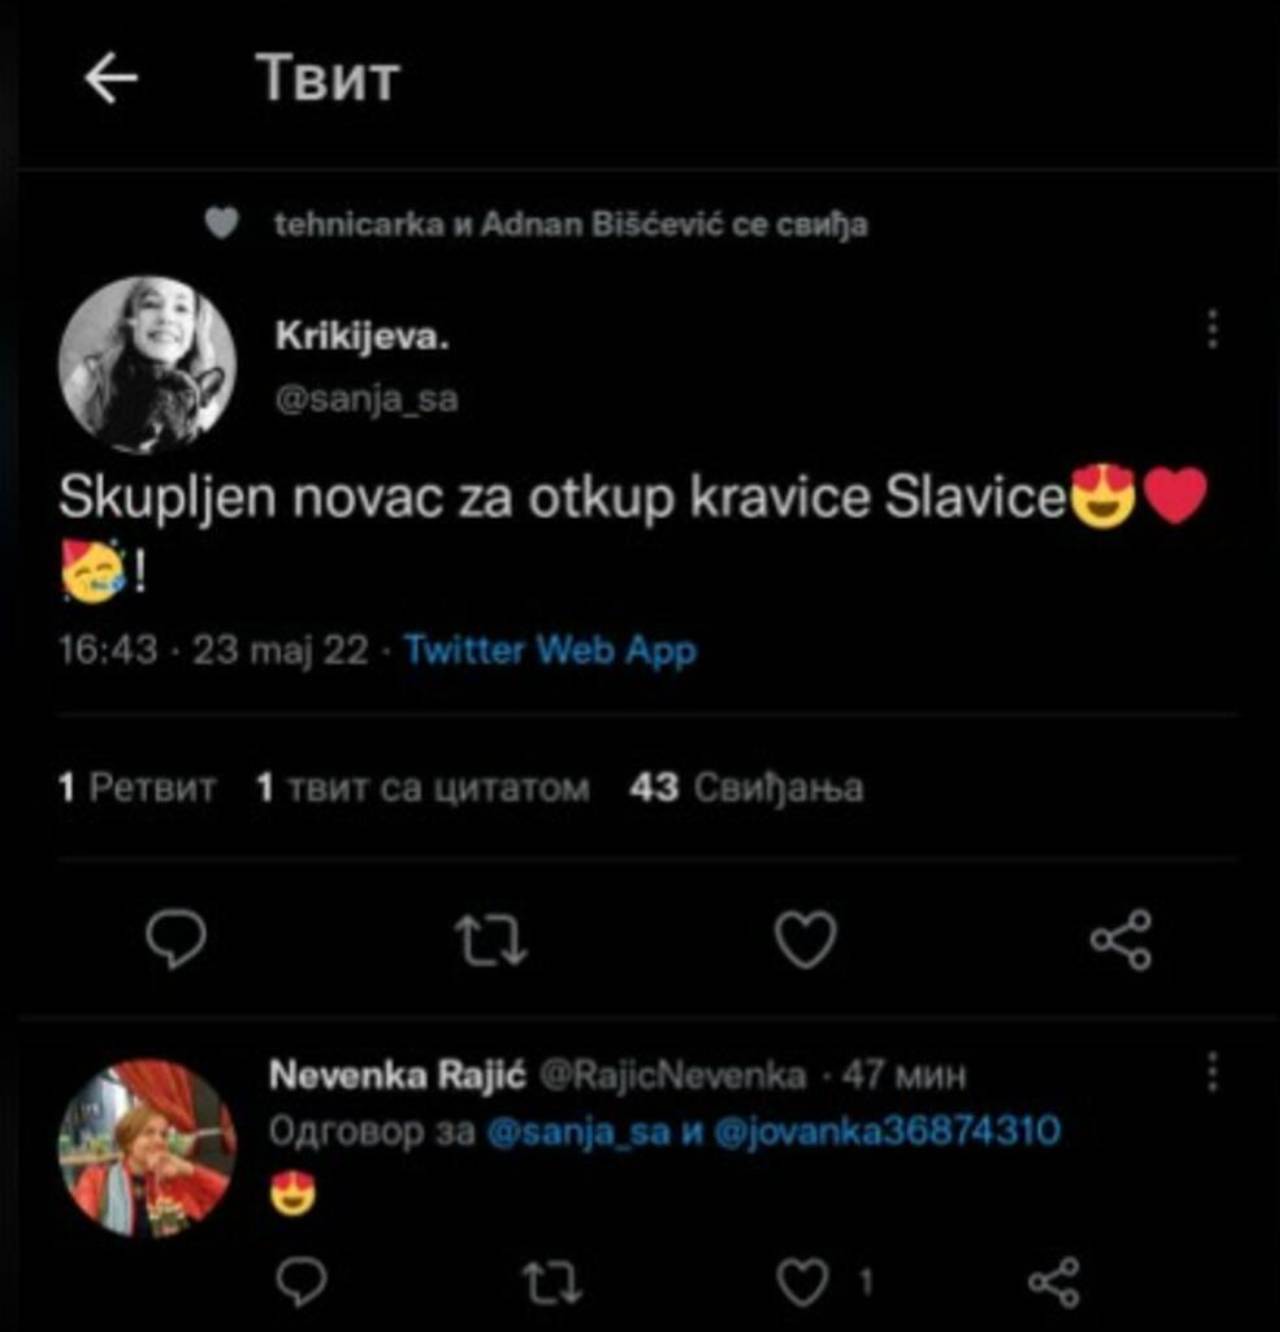  Nakon što je skupljen novac za otkup kravice Slavice, Tviter se usijao od komentara. 